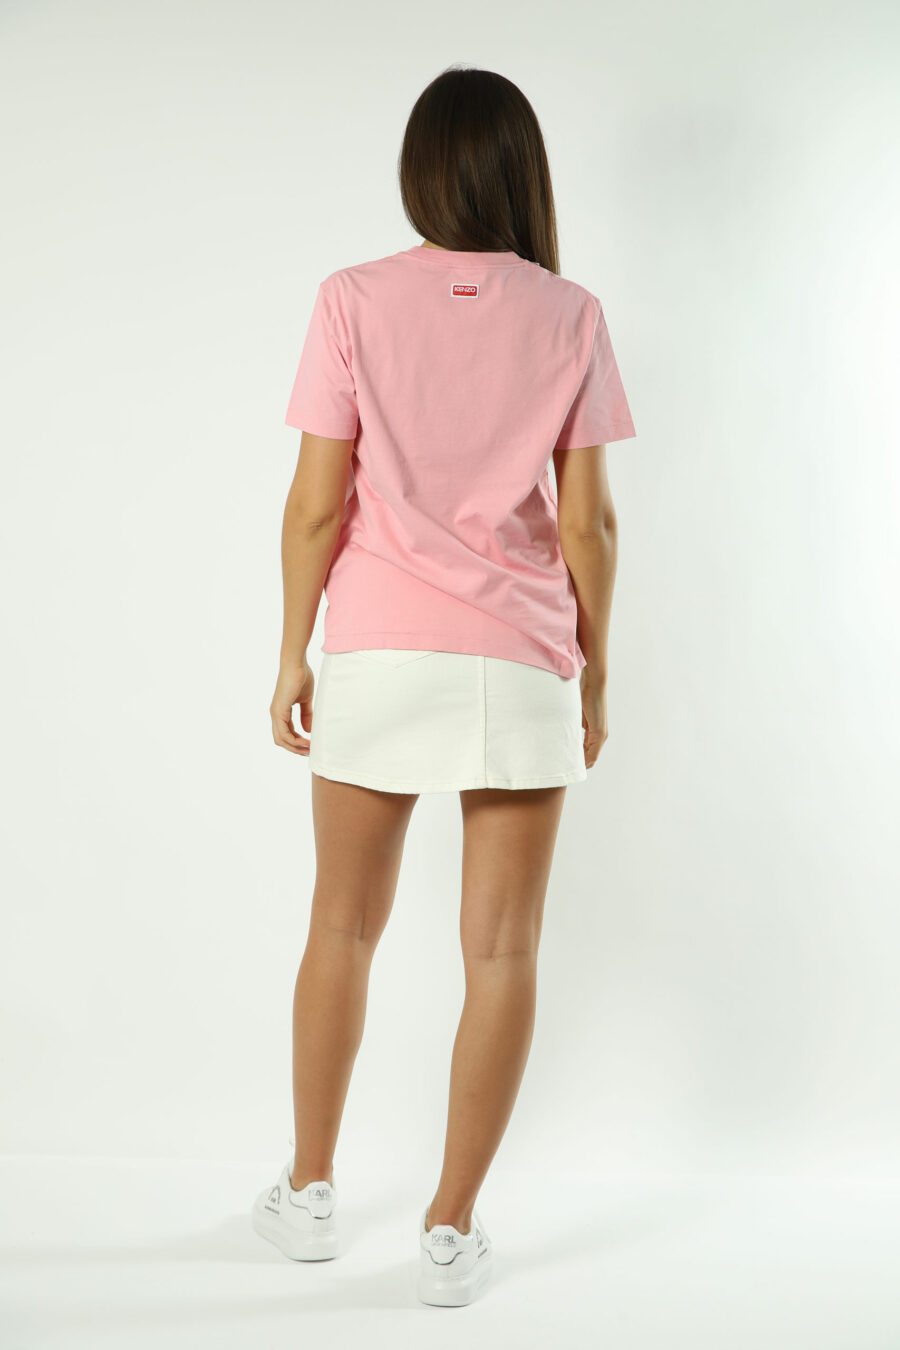 Camiseta rosa con maxilogo flor naranja - Photos 1407